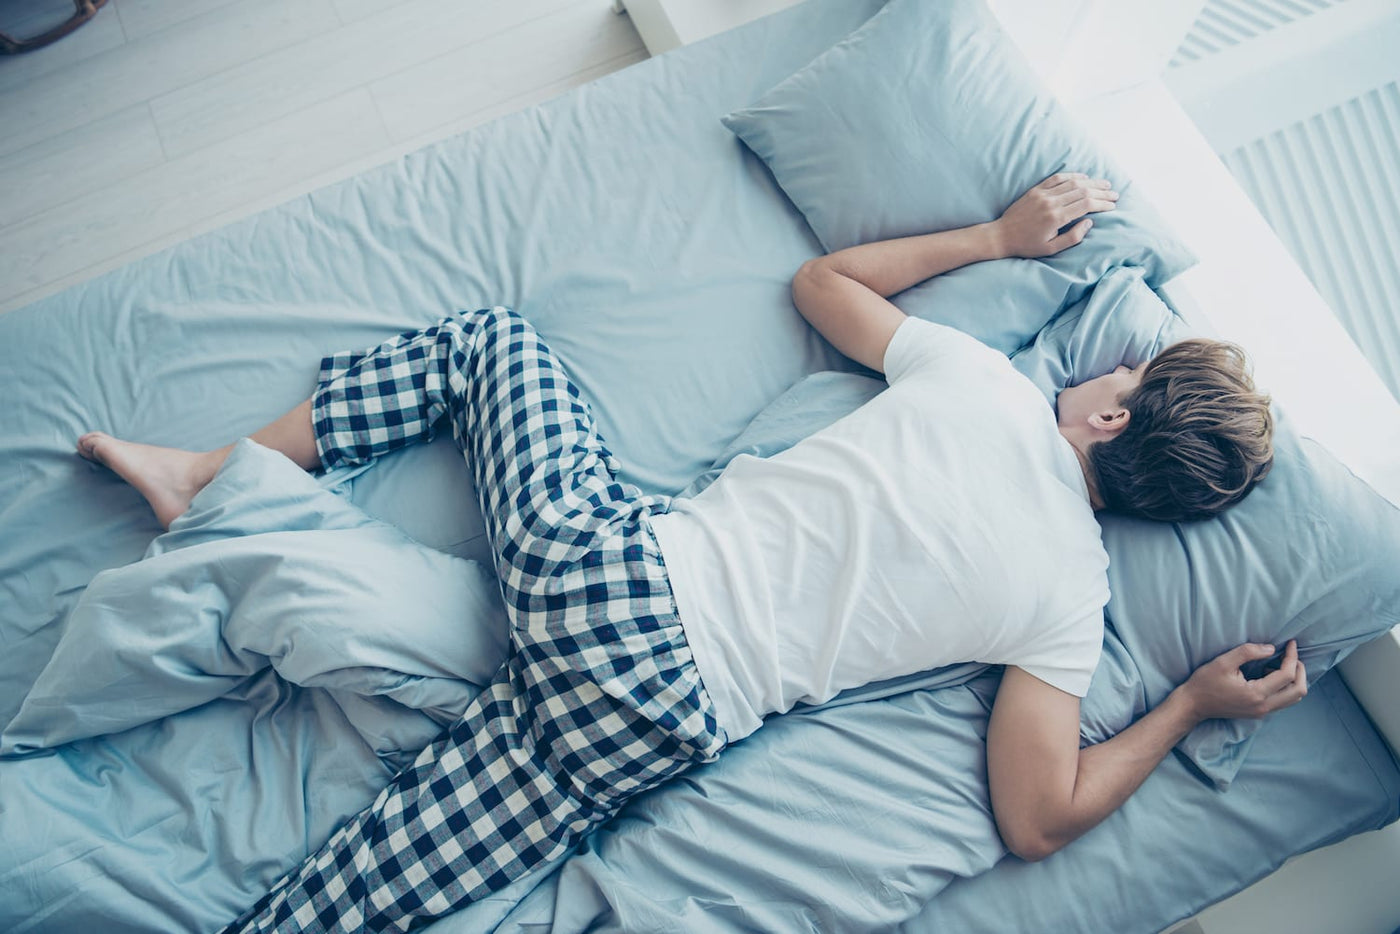 Ποια είναι η Καλύτερη Στάση Ύπνου;